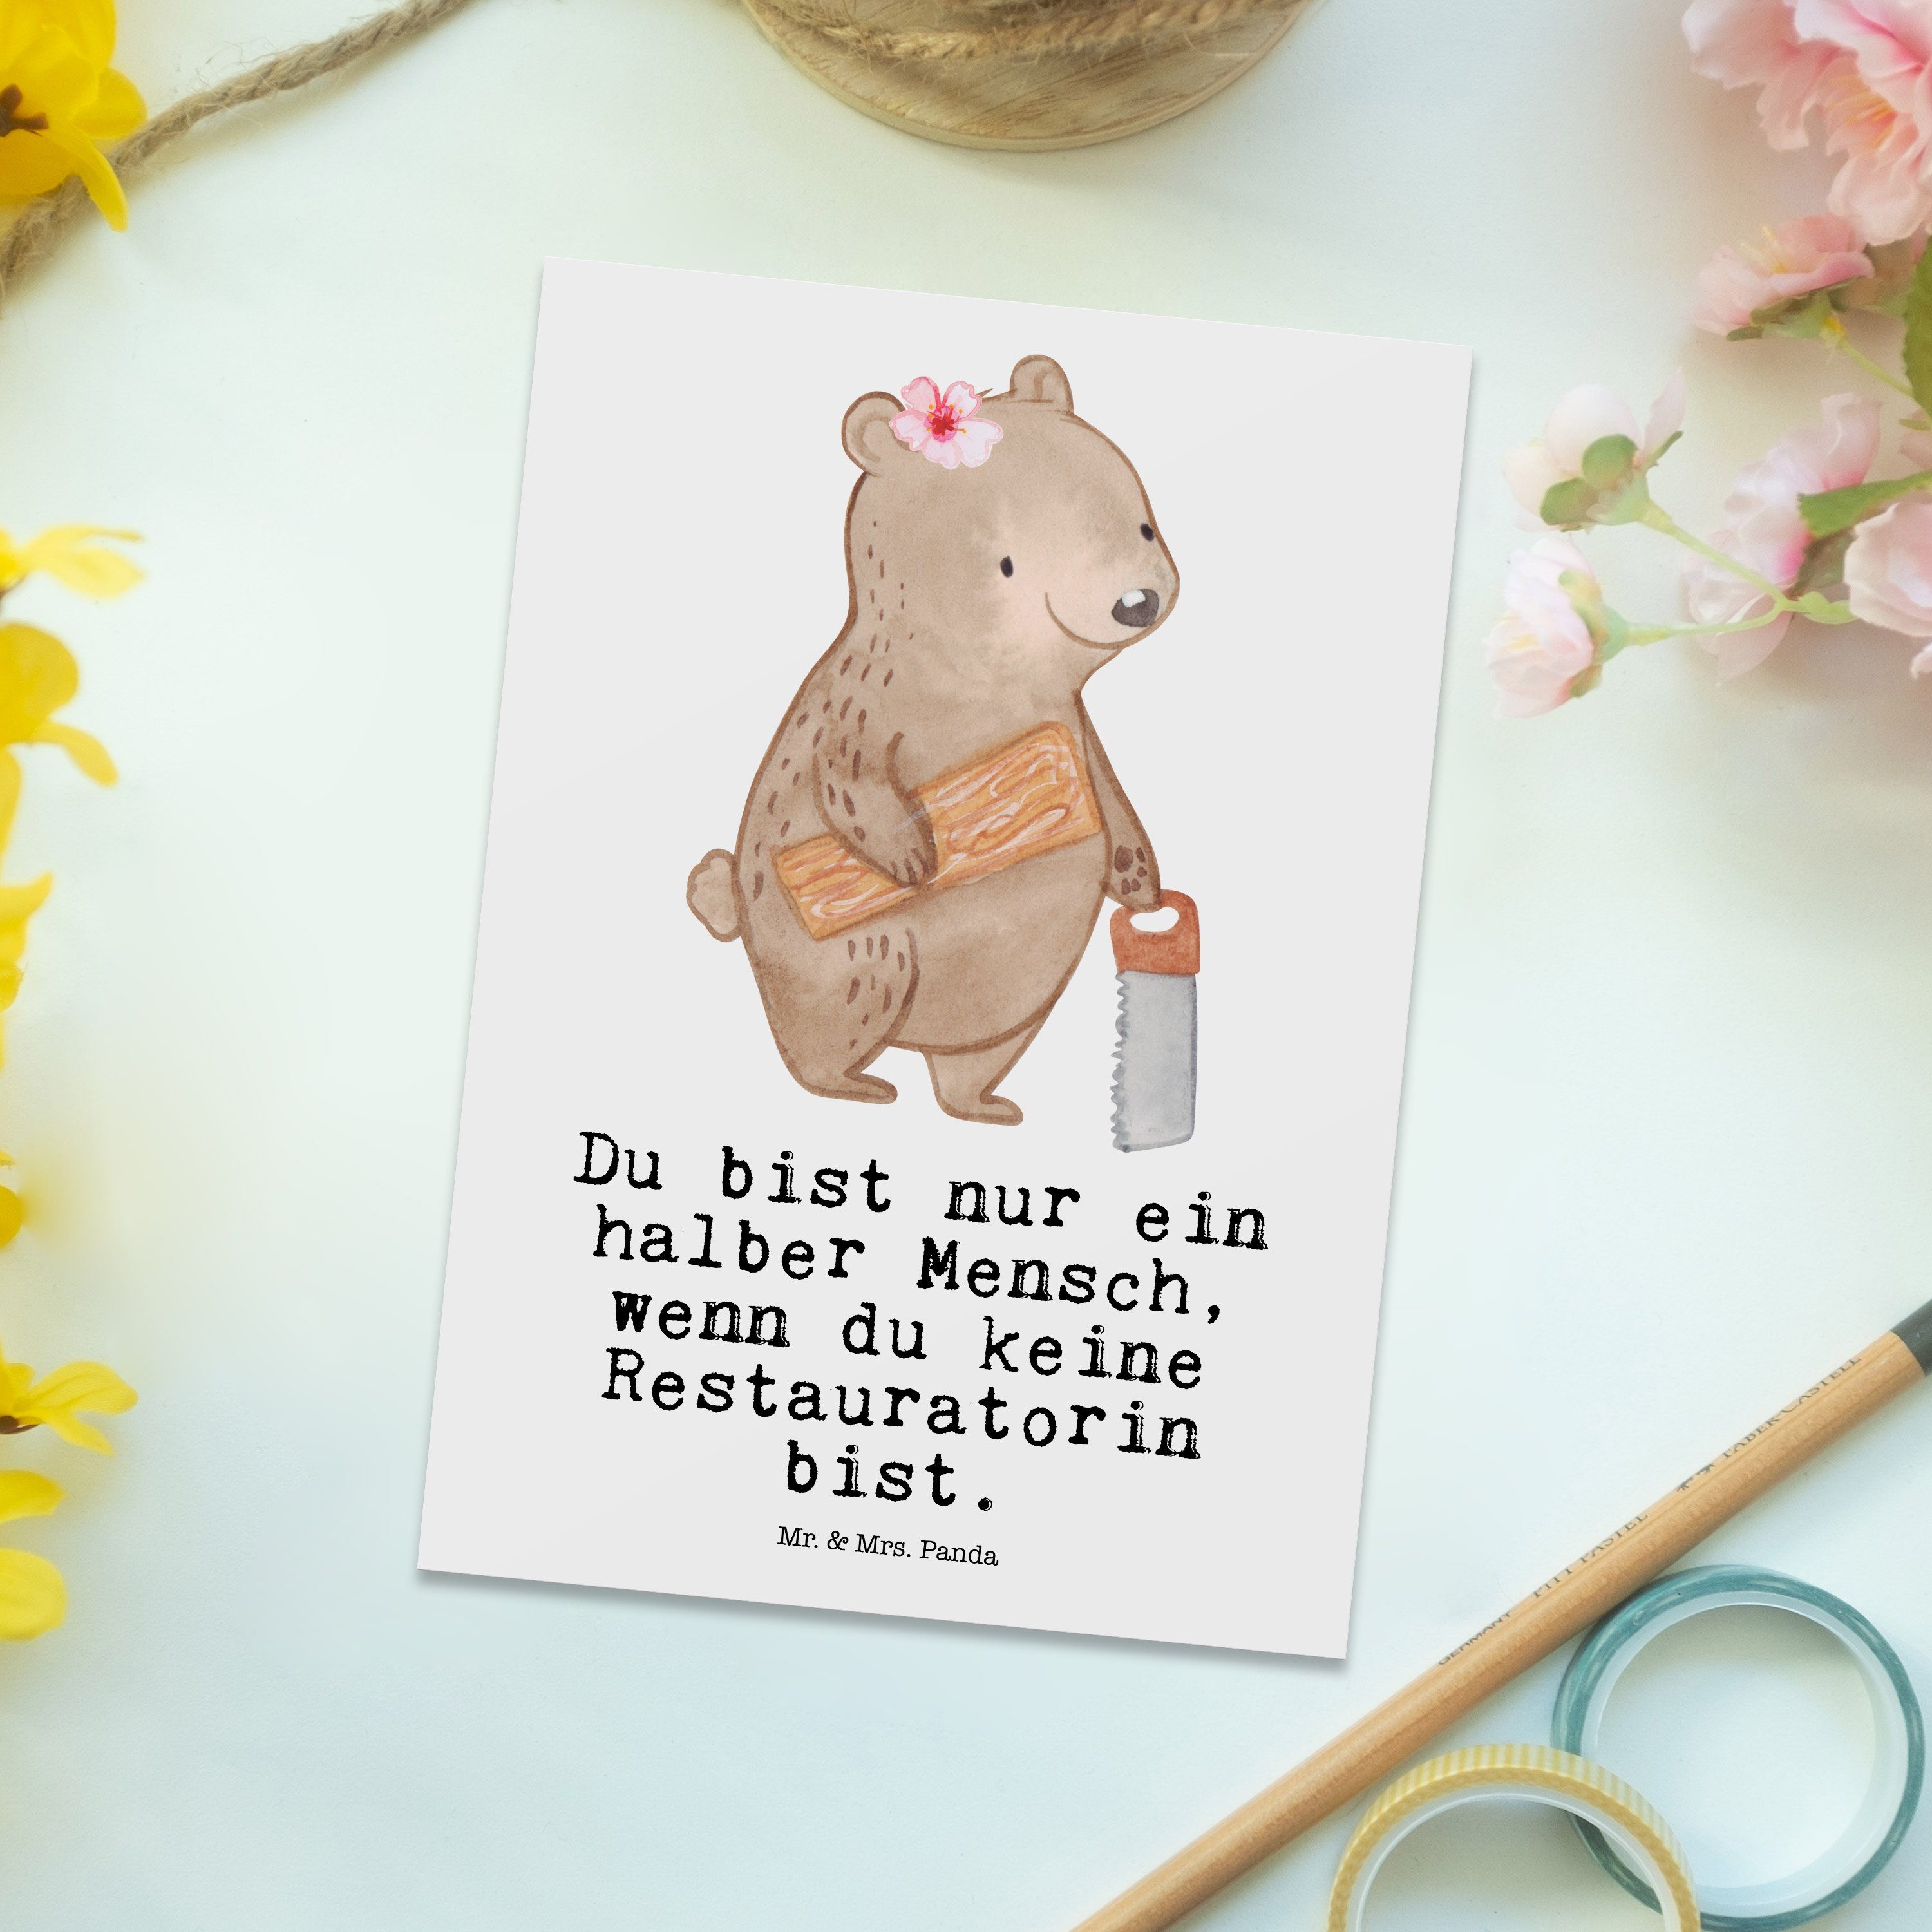 Mr. & Geburts Herz Mitarbeiter, Firma, - mit Postkarte Weiß - Restauratorin Mrs. Geschenk, Panda